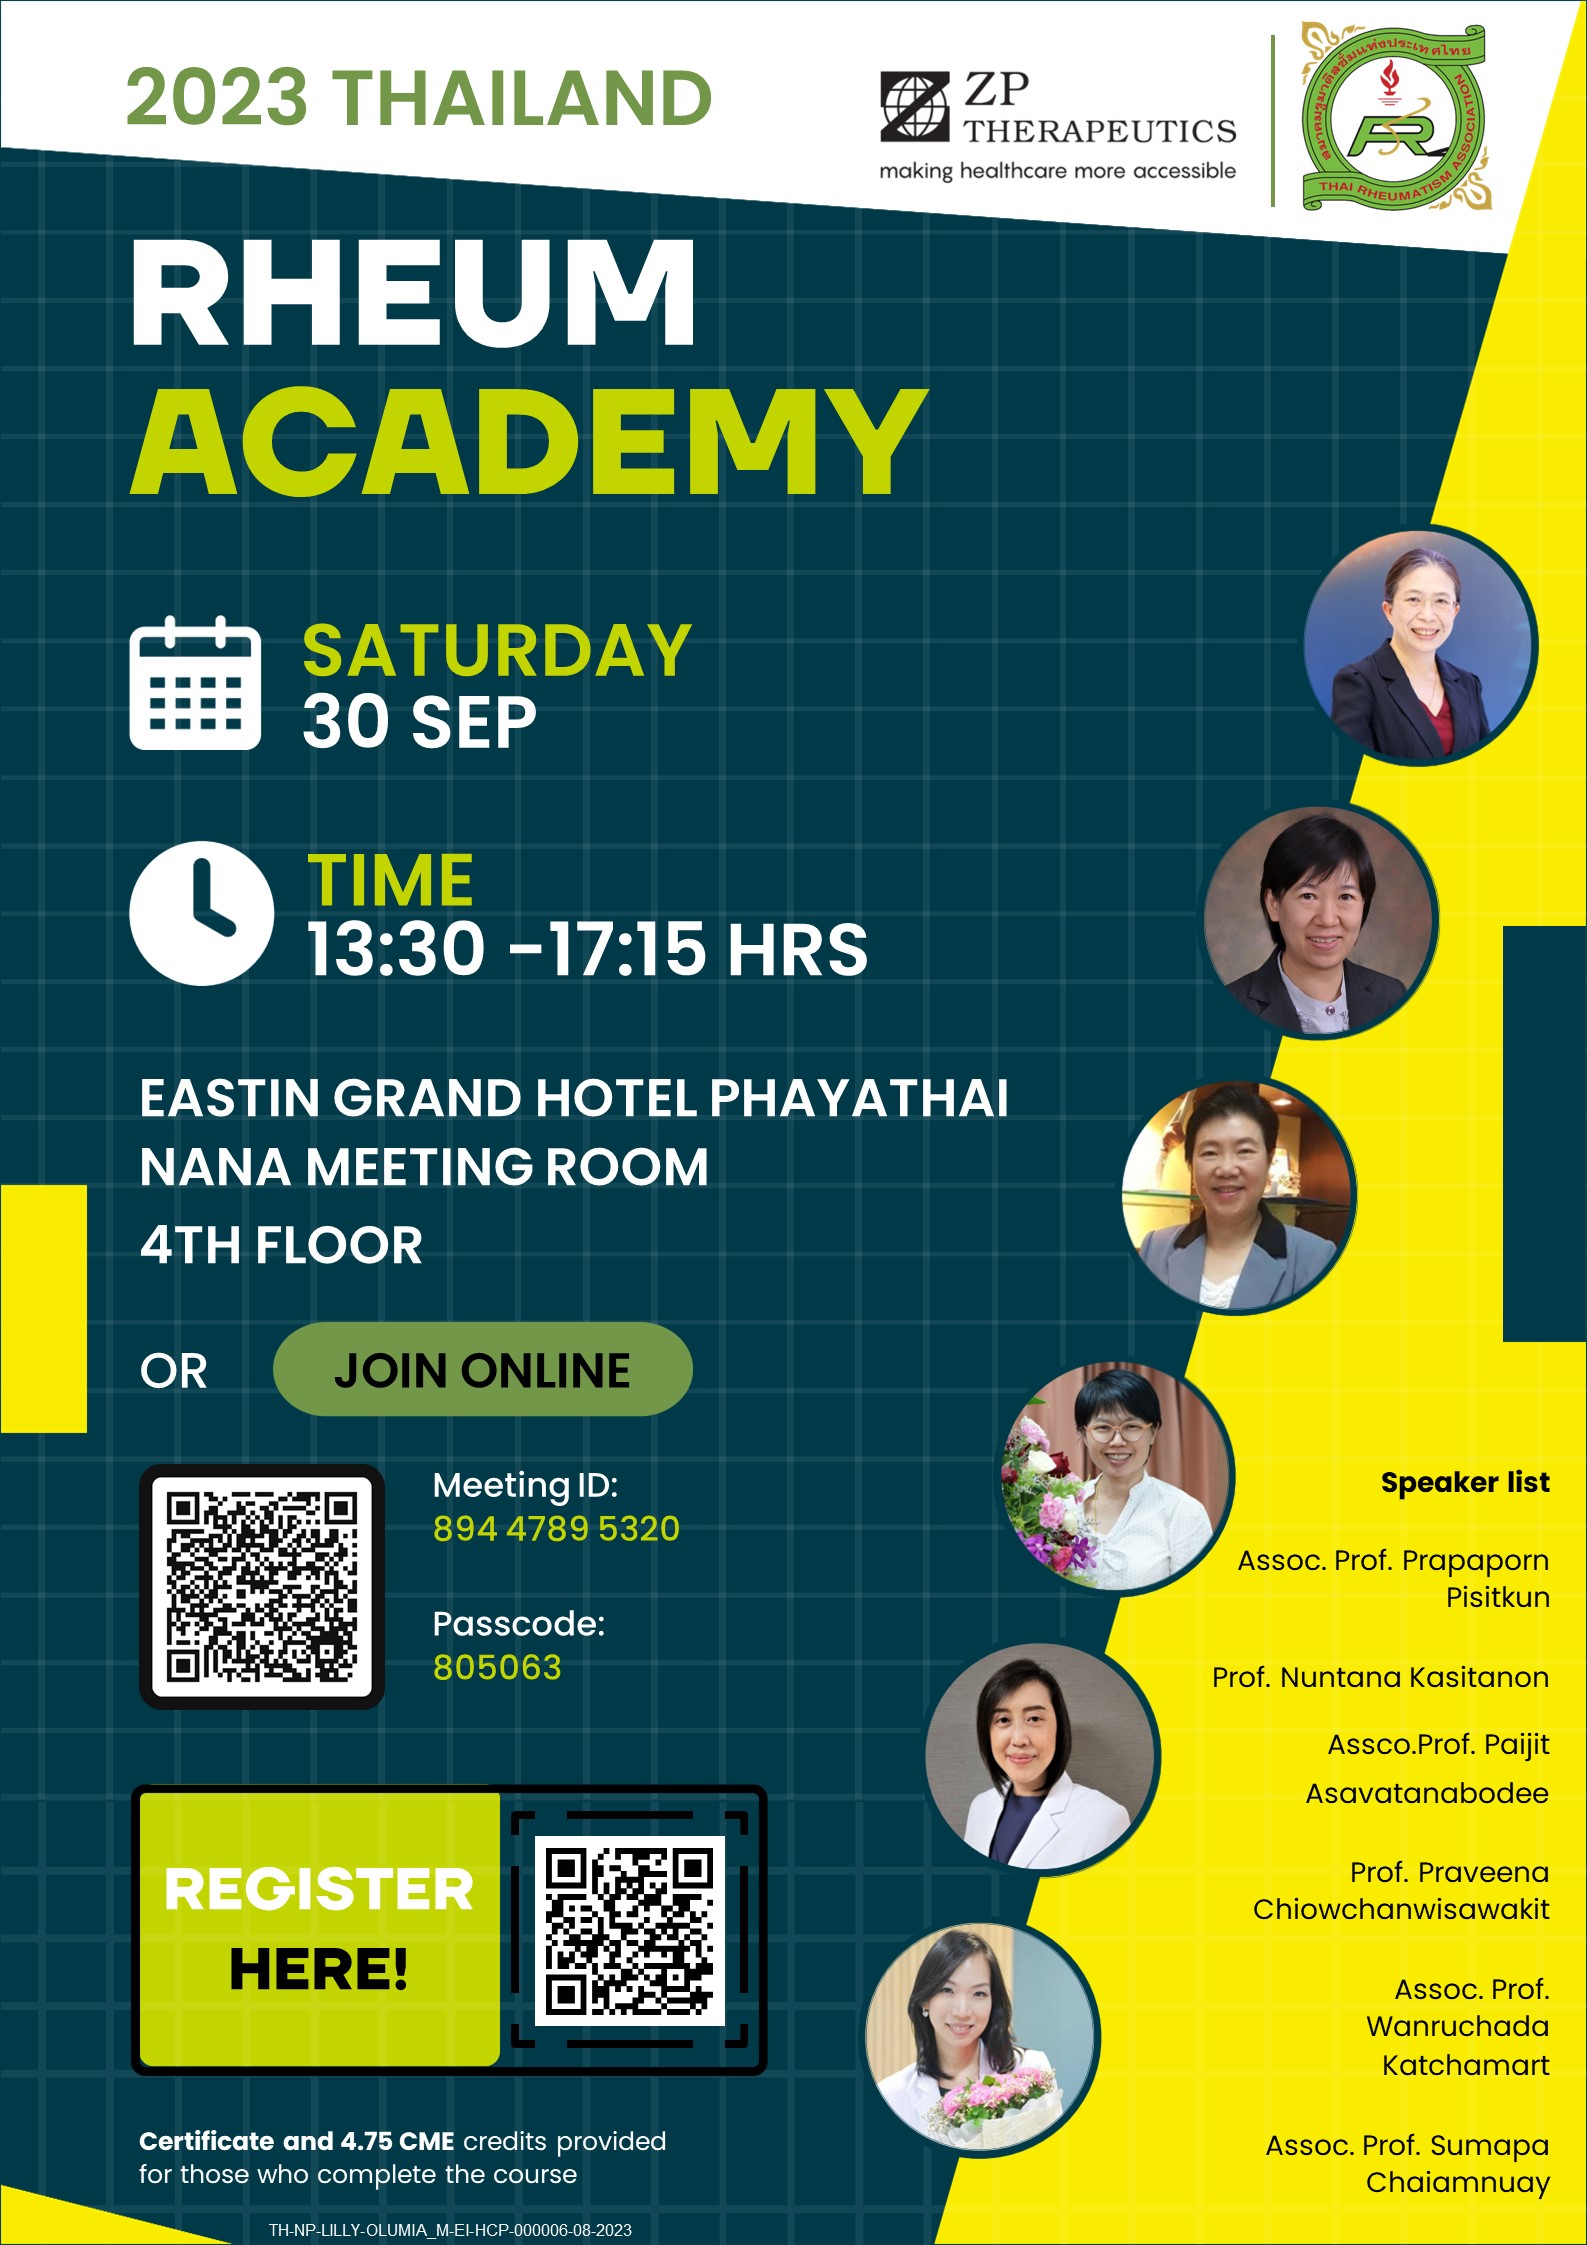 การประชุมวิชาการ Rheum Academy ในวันเสาร์ที่ 30 กันยายน 2566 เวลา 12:00 - 17:20 น.